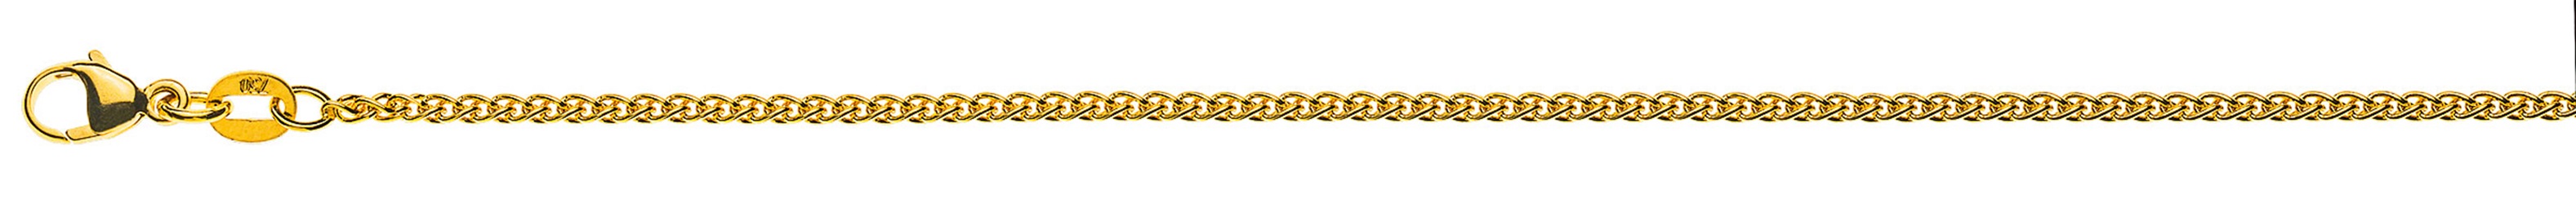 AURONOS Prestige Halskette Gelbgold 18K Zopfkette 50cm 1.6mm